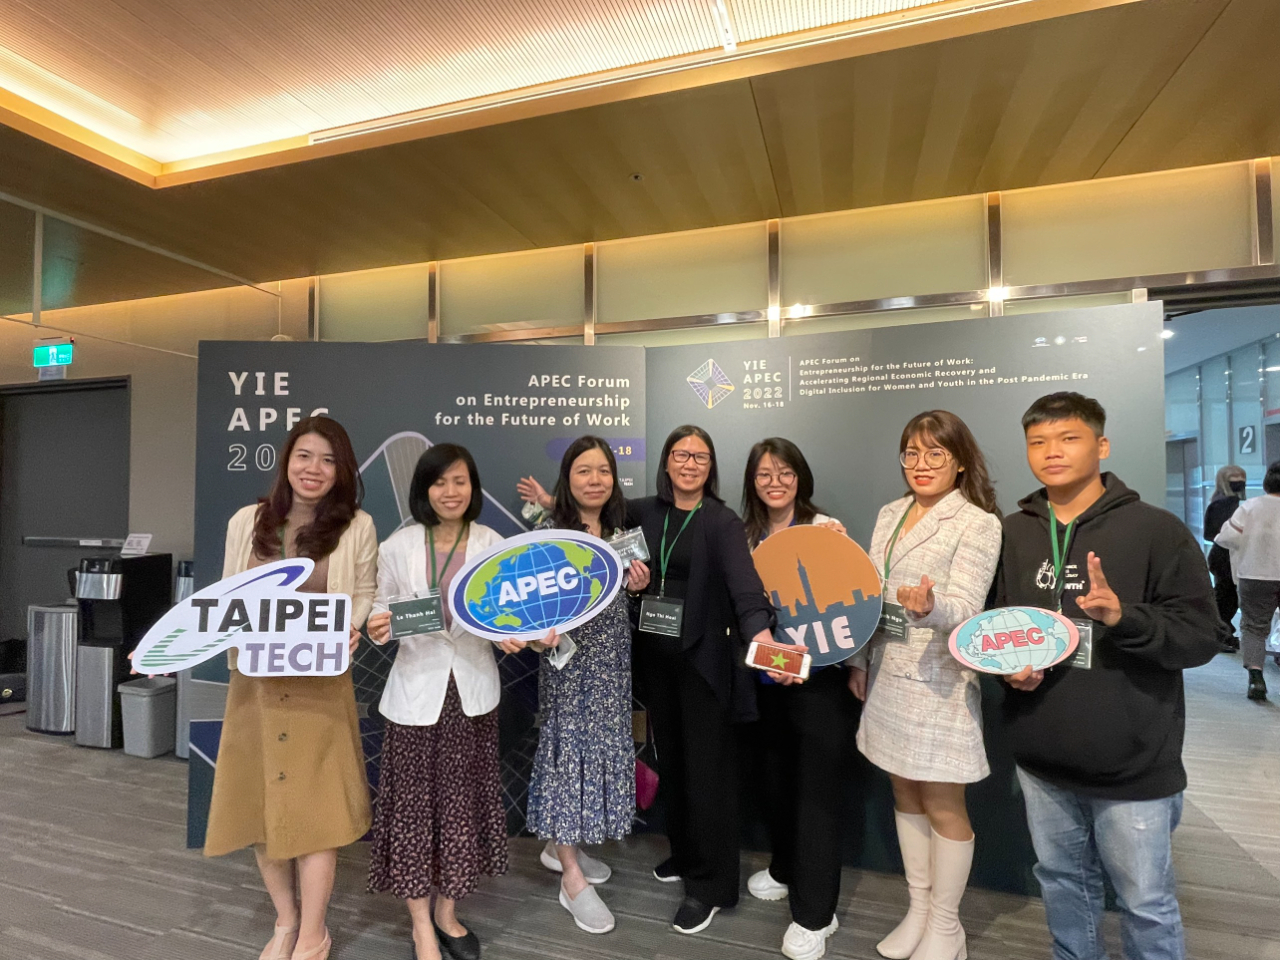 Được sự giới thiệu của Phòng Giáo dục-Văn phòng Kinh tế và Văn hóa Đài Bắc tại TPHCM, 2 sinh viên và giáo viên của Khoa Đào tạo chất lượng cao trường Đại học Sư phạm Kỹ thuật TPHCM đã tham dự YIE APEC 2022 tại Đài Bắc ngày 16-18/11/2022 do Bộ Giáo dục Đài Loan tổ chức